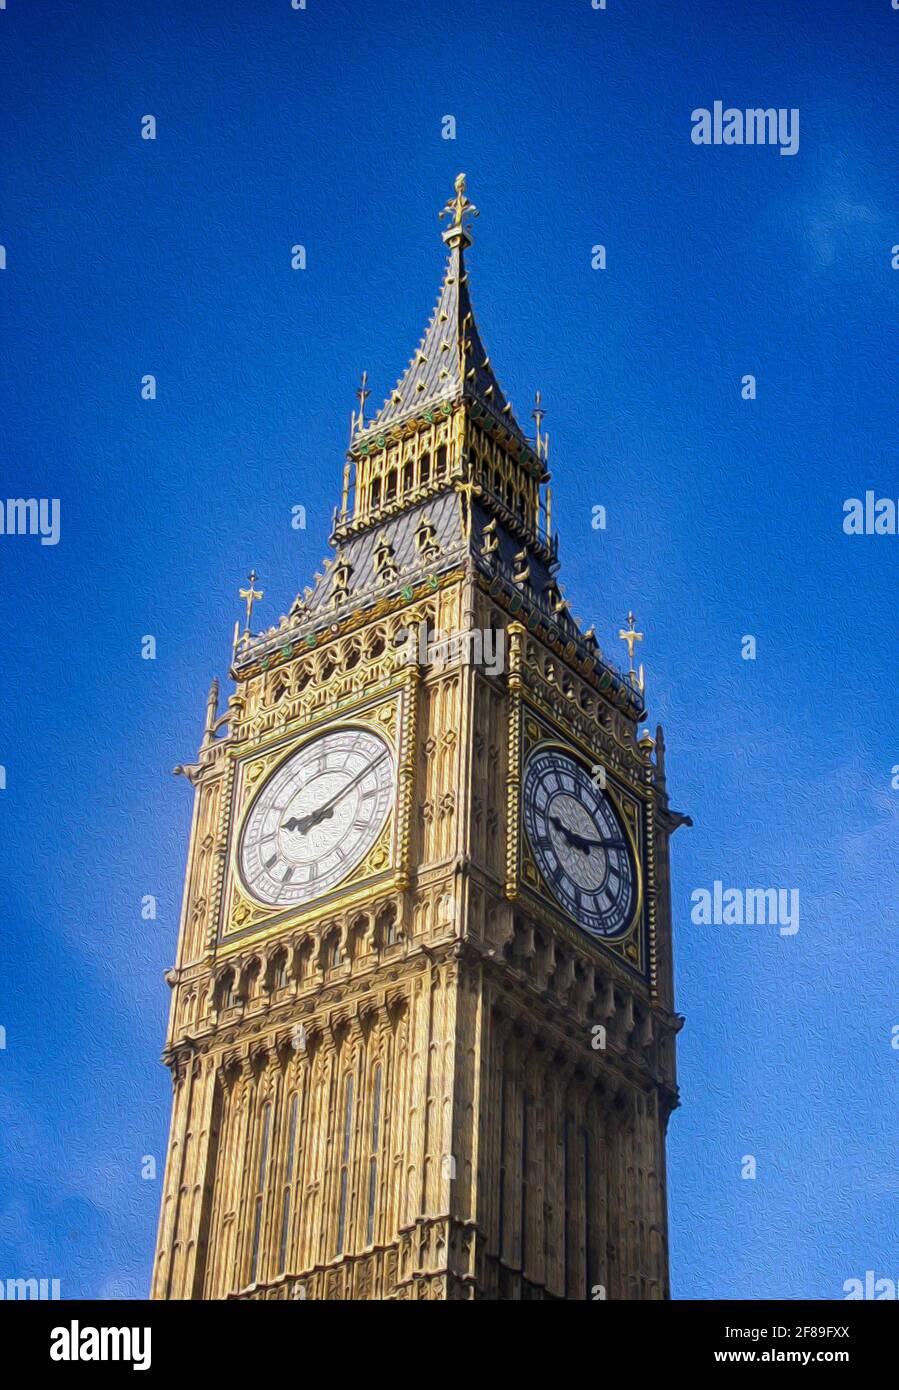 Tour de l'horloge Big ben célèbre et emblématique point de repère de la ville, construit au XIXe siècle dans le style néo-gothique.effet de peinture ajouté Banque D'Images